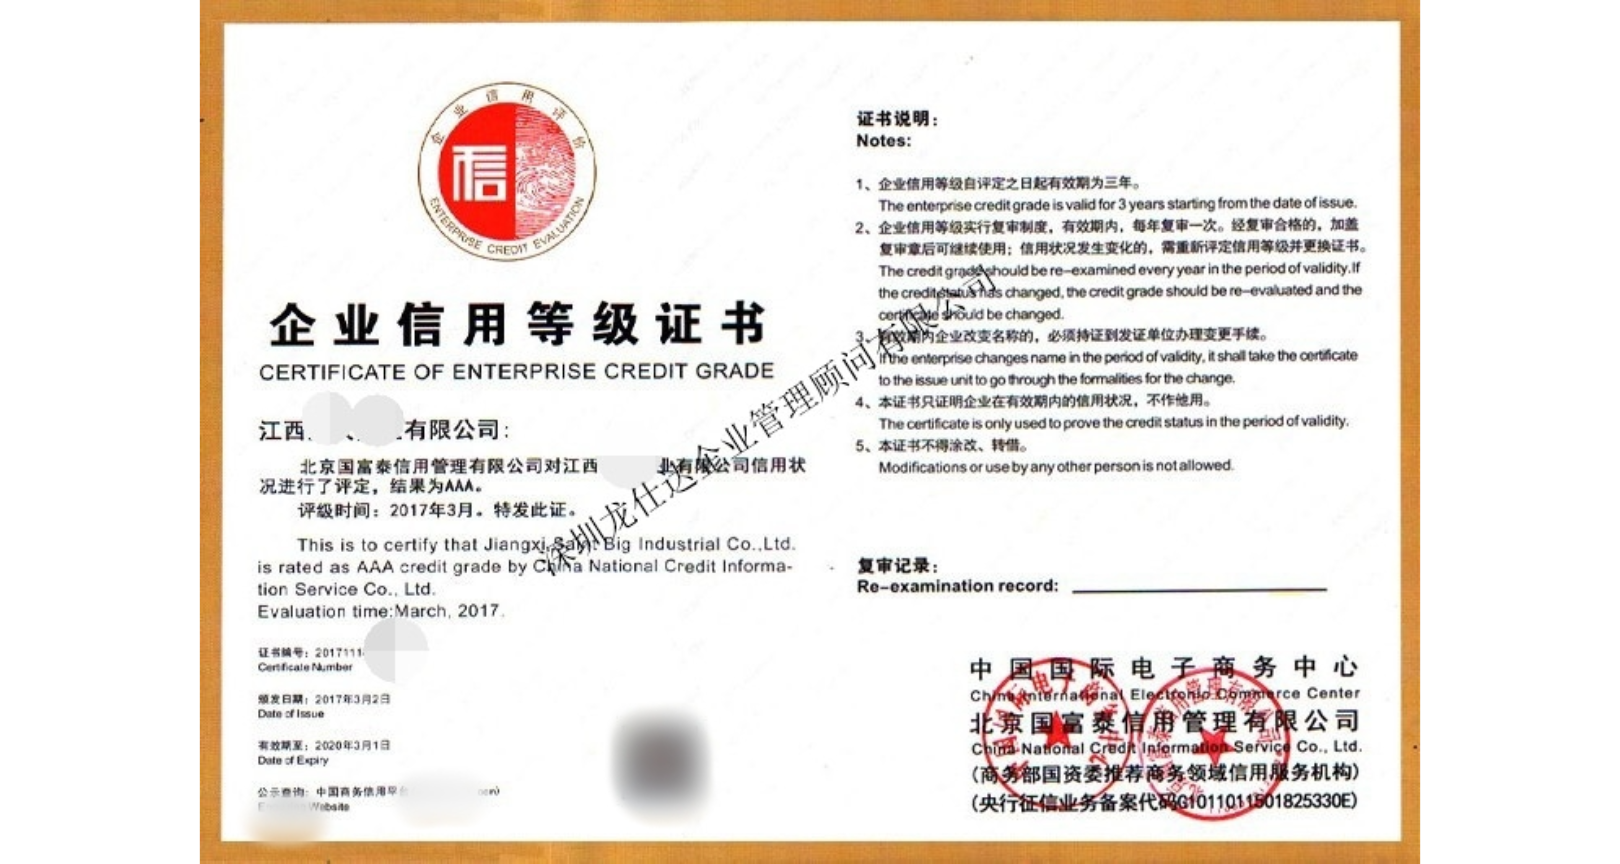 贵州生鲜农产品配送服务认证能不能通过,服务认证